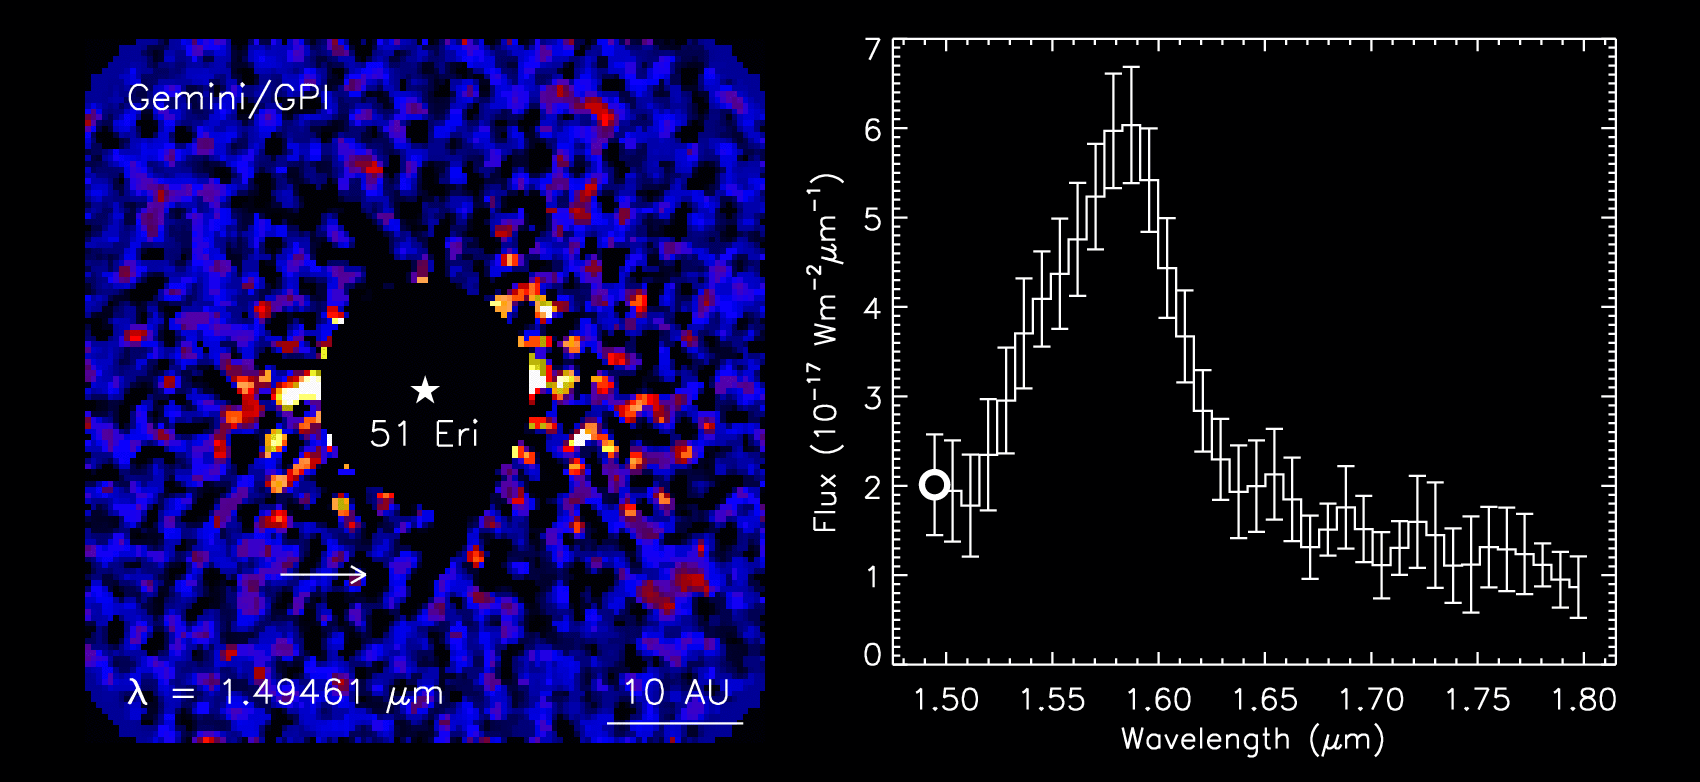 Animación: Detección del exoplaneta 51 Eri b con el Capturador de Imágenes de Planetas de Gemini. Izquierda: Imágenes de la estrella 51 Eridani en diferentes longitudes de onda, revelando el exoplaneta 51 Eri b. Derecha: Espectro del exoplaneta.